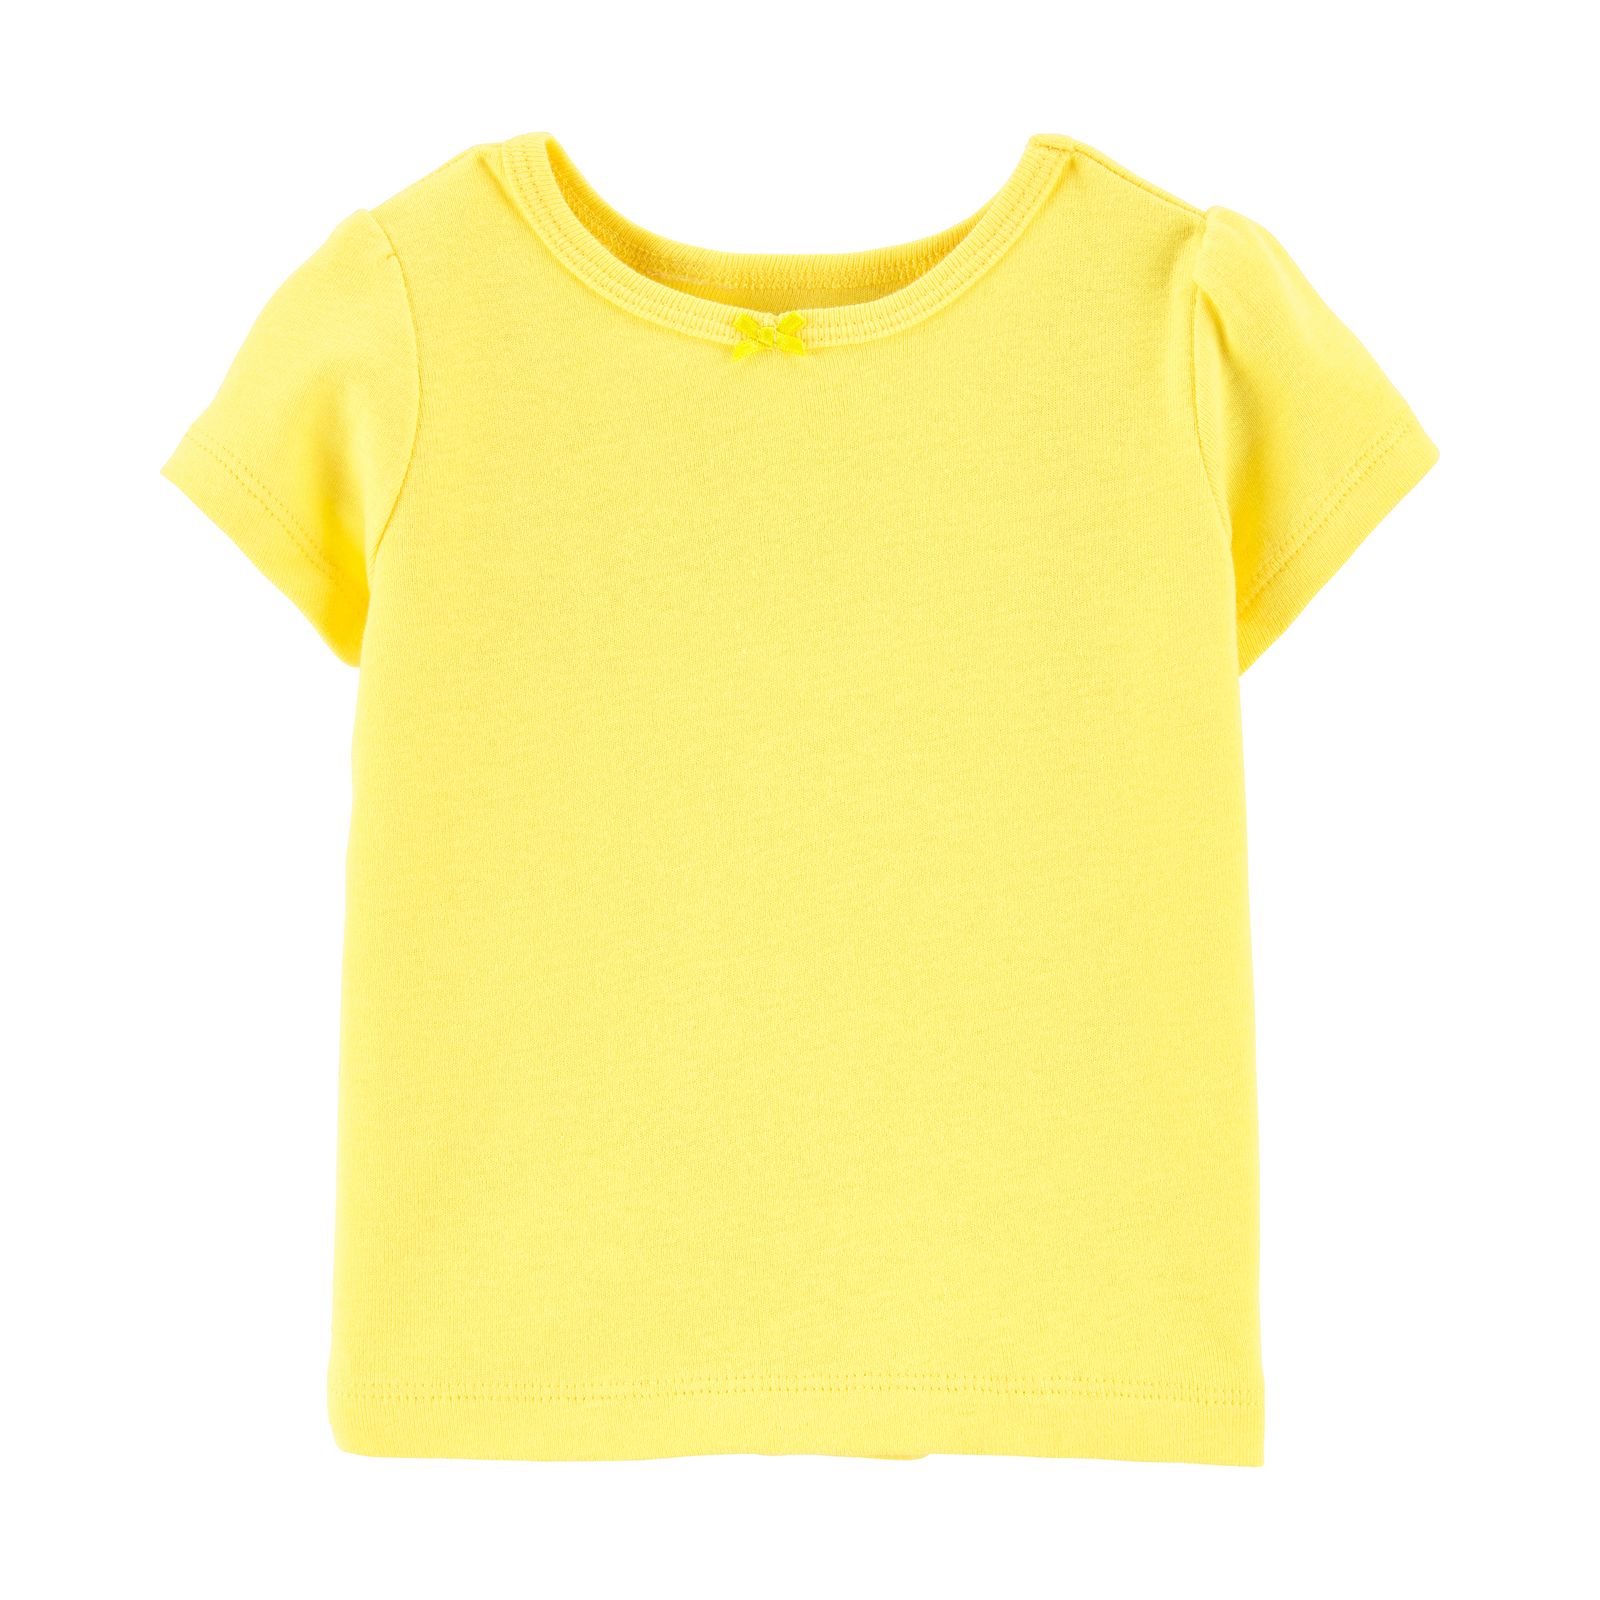 ست تی شرت و سرهمی نوزادی کارترز طرح Lemon کد M606 -  - 4